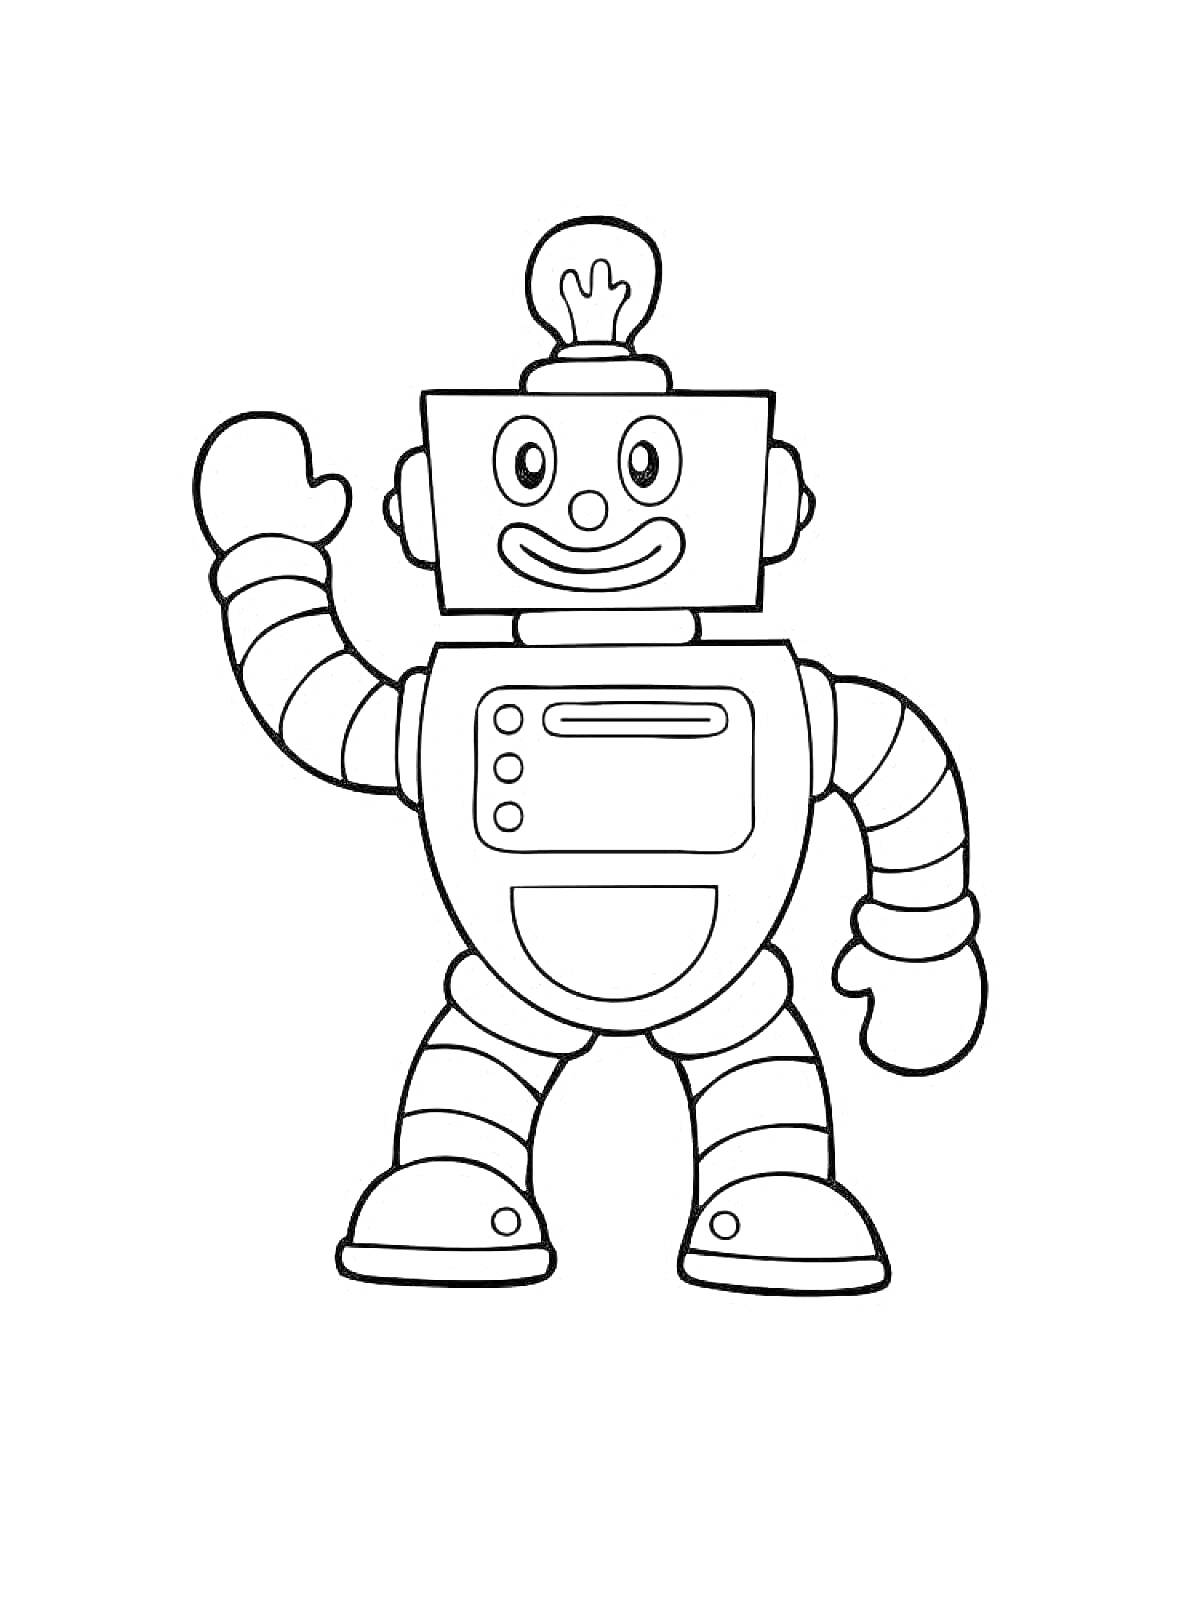 Раскраска улыбающийся робот с лампочкой на голове, поднимающая рука, горизонтальная панель на груди, сгибаемые руки и ноги, полосатый корпус